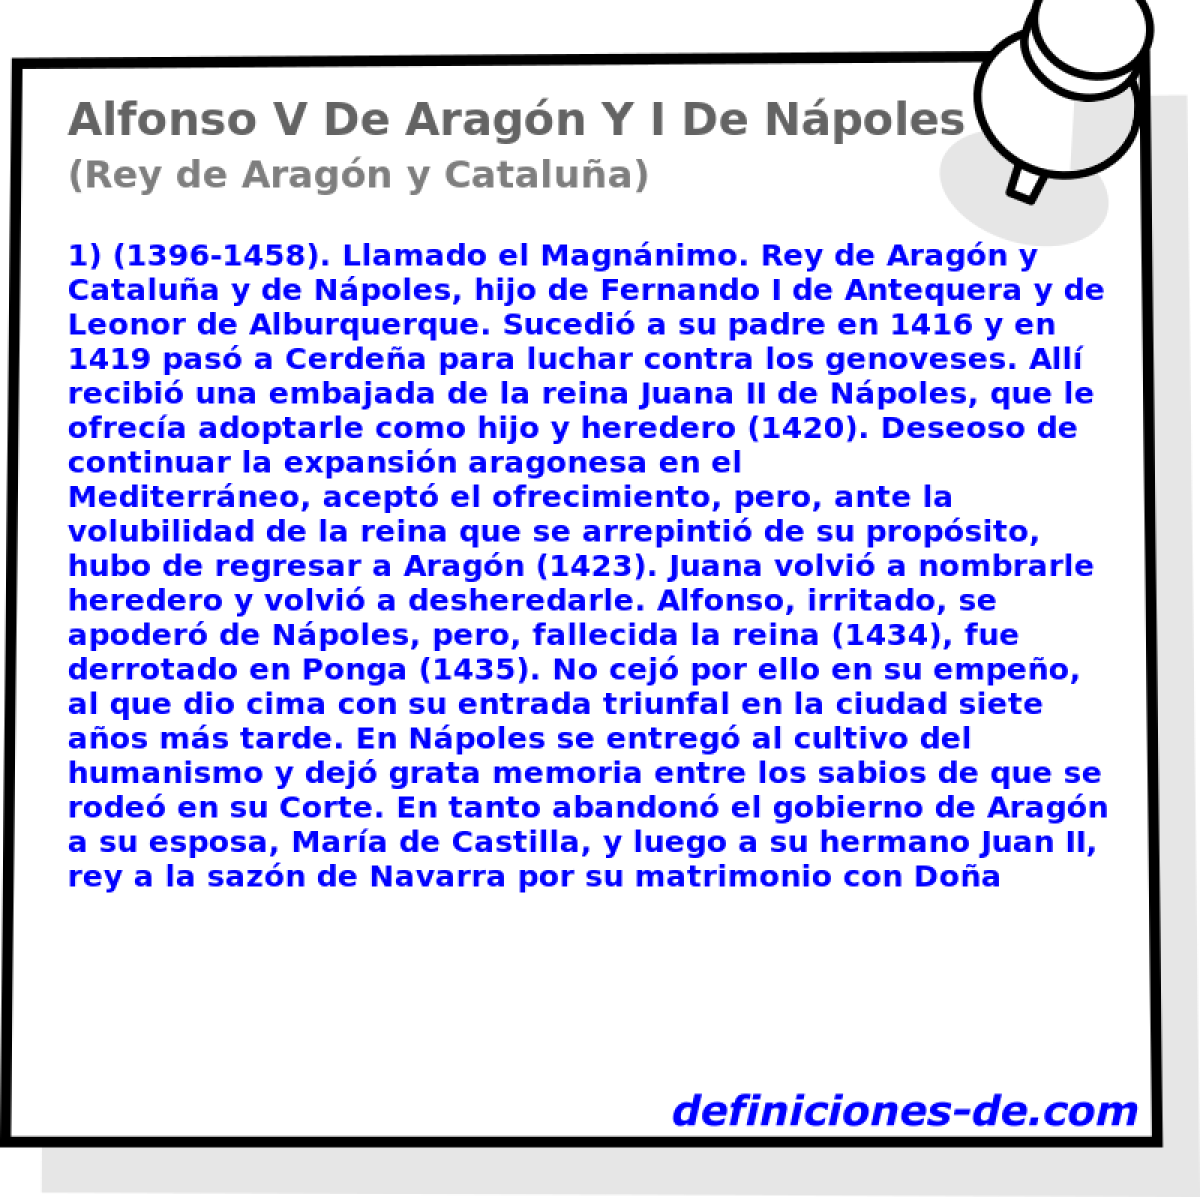 Alfonso V De Aragn Y I De Npoles (Rey de Aragn y Catalua)